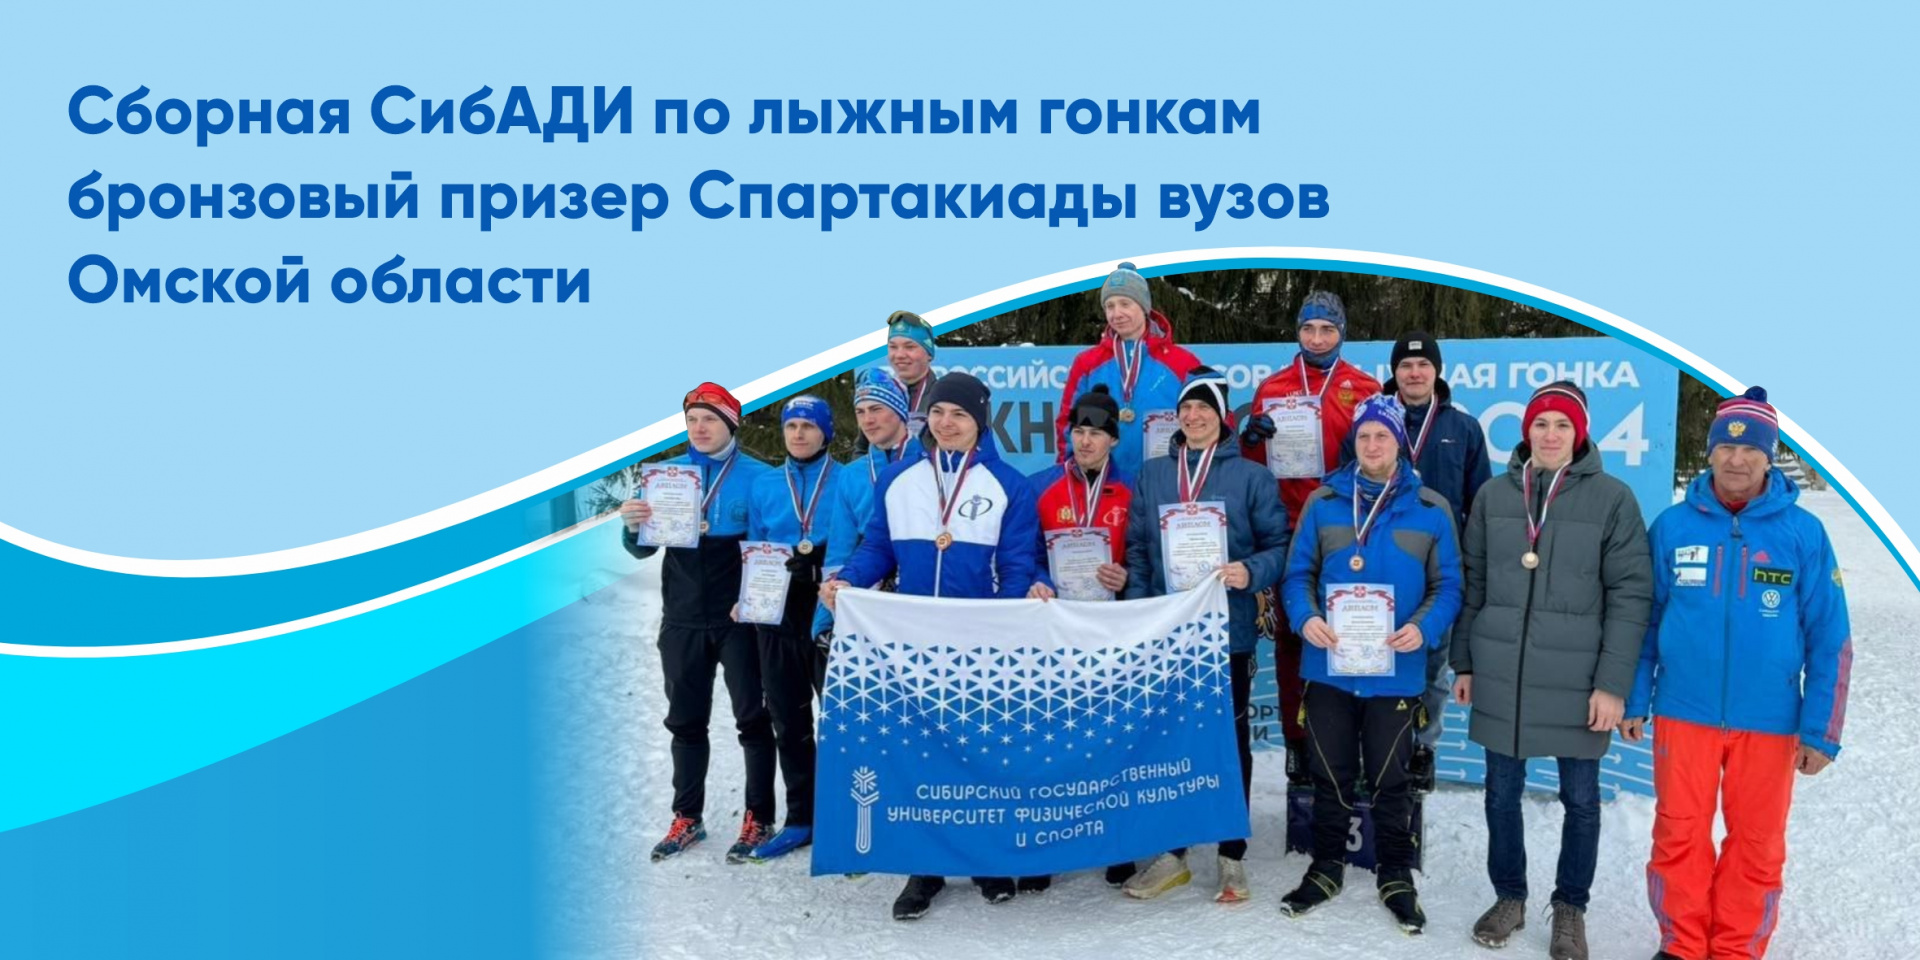 Сборная СибАДИ по лыжным гонкам бронзовый призер Спартакиады вузов Омской области